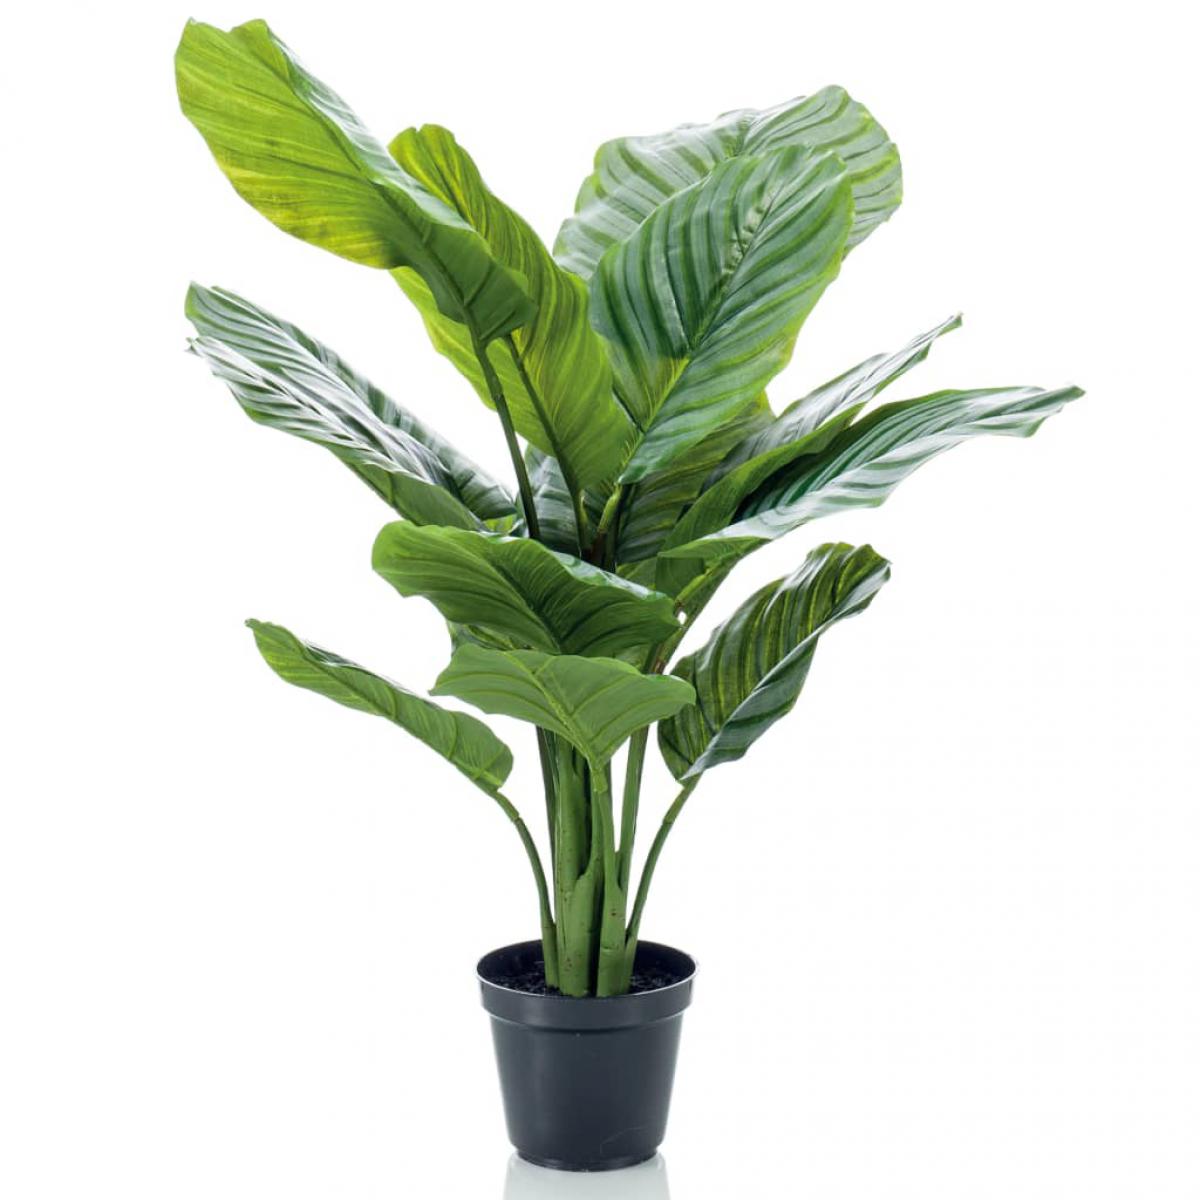 Emerald - Emerald Plante artificielle Calathea Orbifolia en pot 60 cm - Plantes et fleurs artificielles